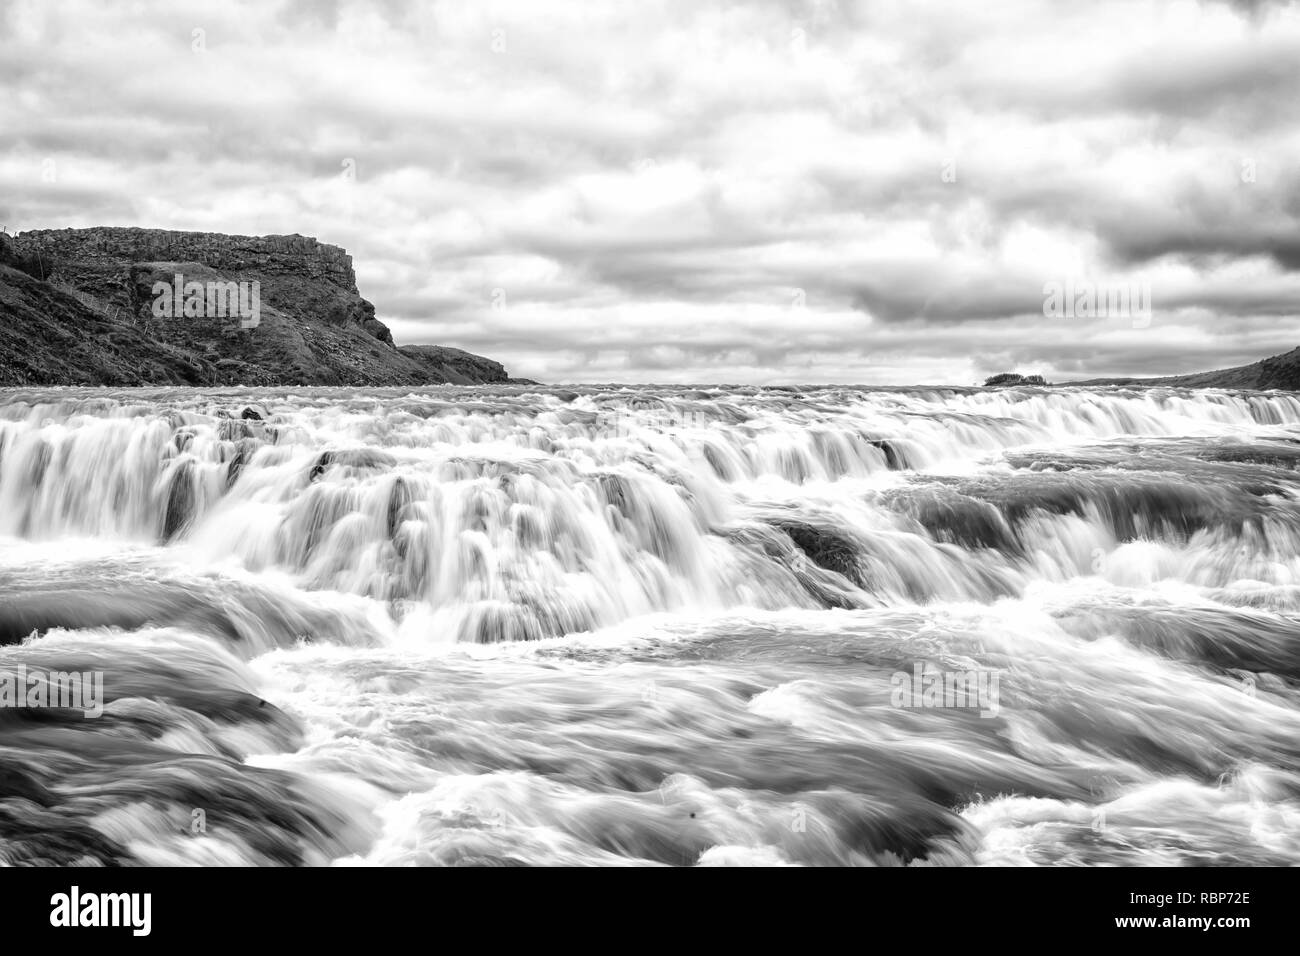 River rapids à Reykjavik, Islande. Le débit des cours d'eau. L'eau tombe sur le ciel nuageux. La vitesse et la turbulence. La nature sauvage du paysage. Mayotte Vacances. Banque D'Images